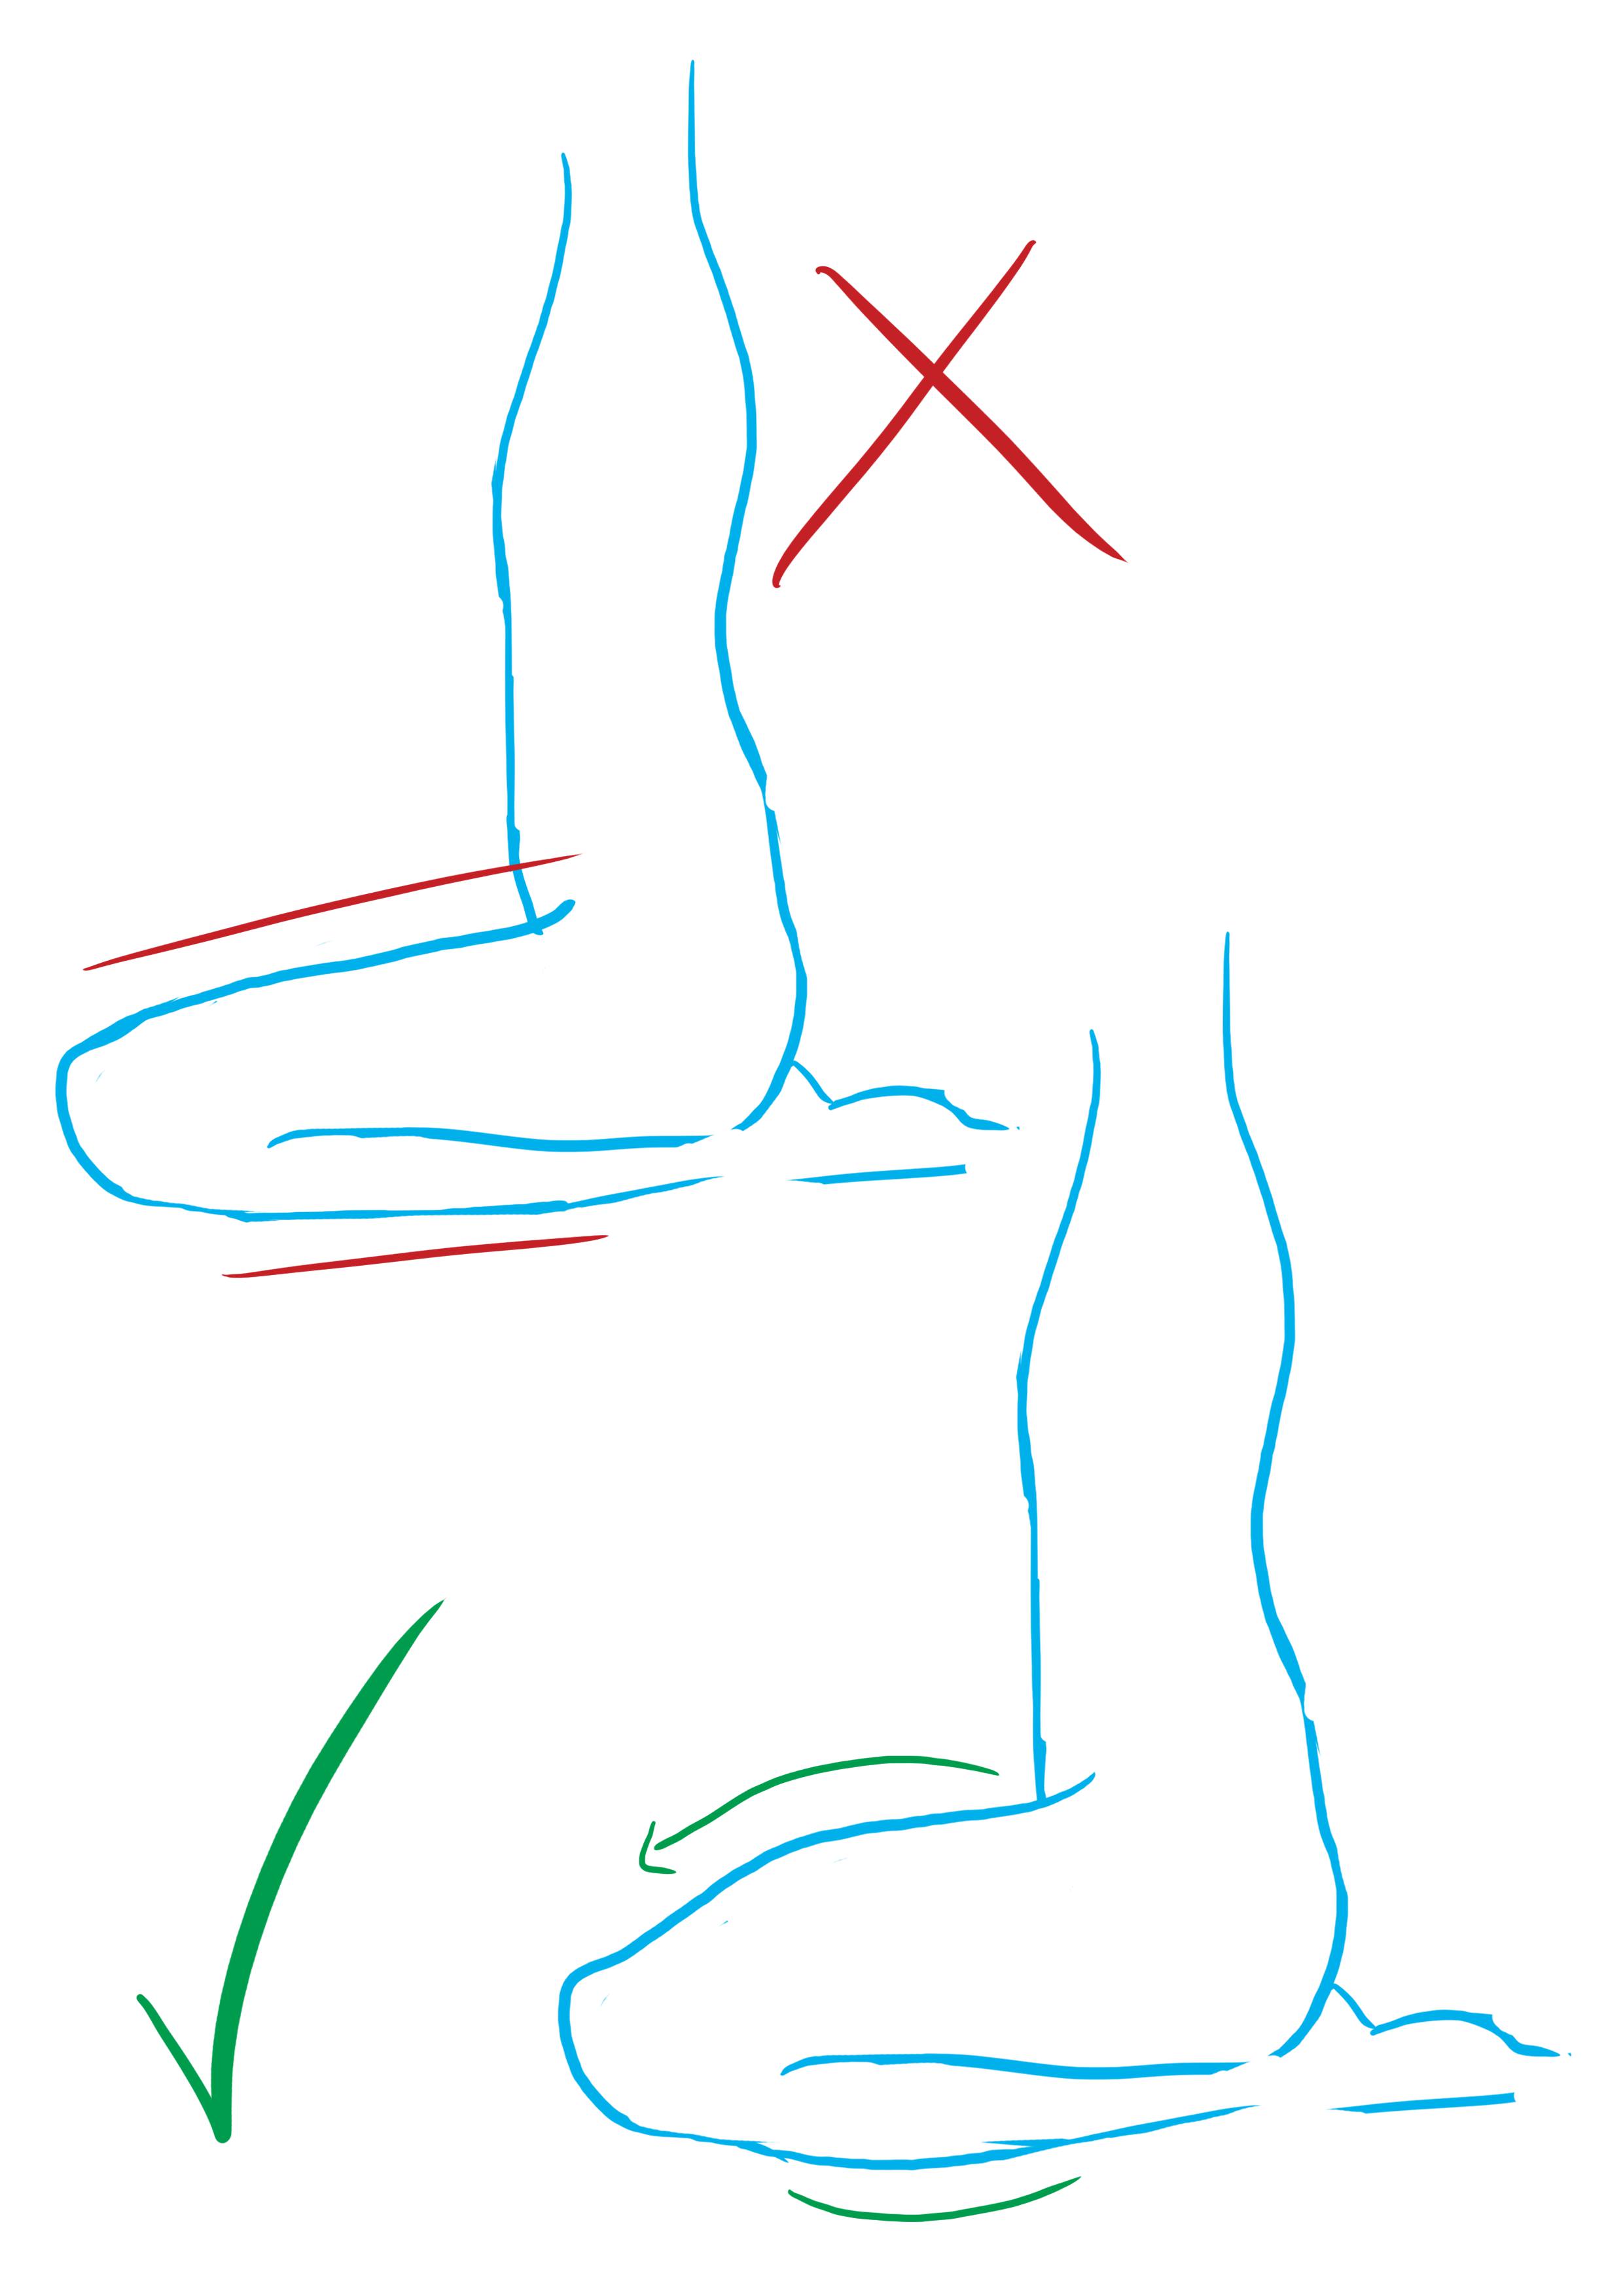 dessin schématique des jambes d’un personnage assis en tailleur